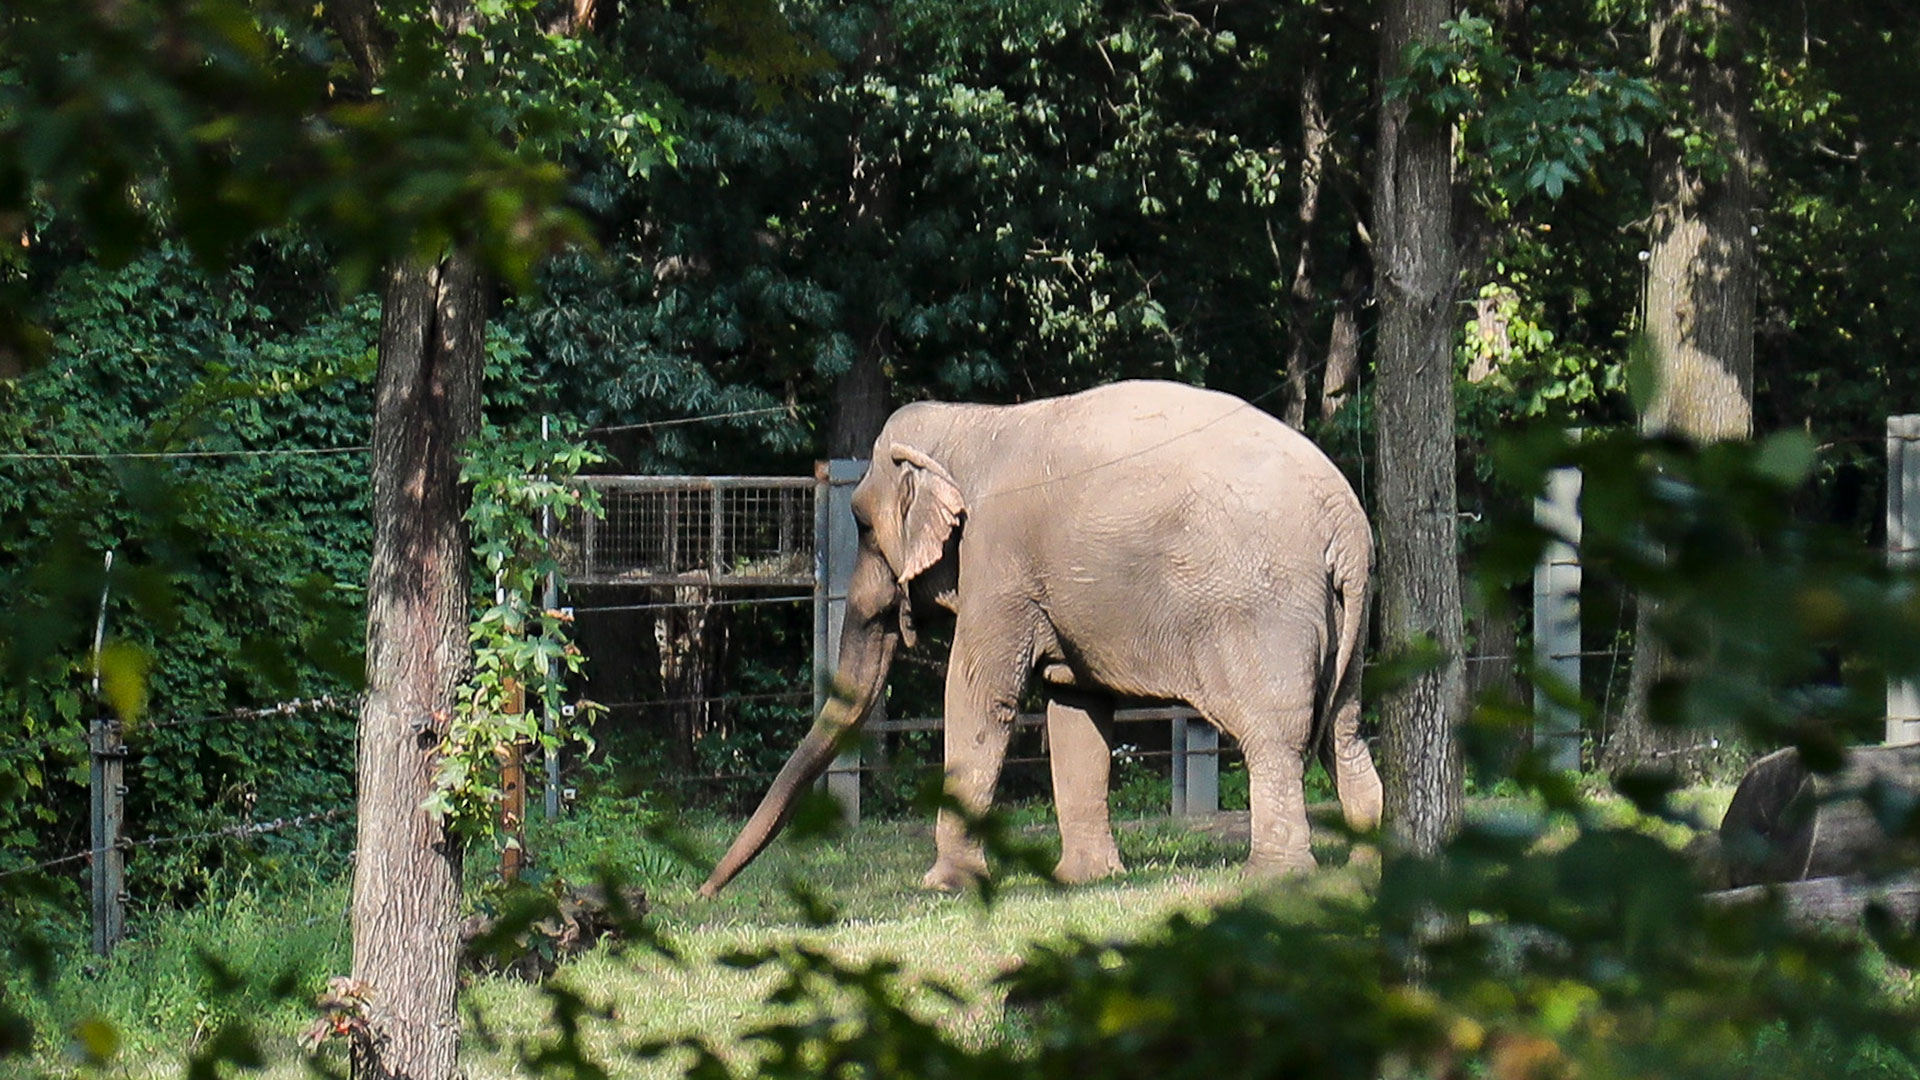 ARCHIVO - El elefante "Happy" del zoológico del Bronx pasea en un hábitat dentro de la exhibición de Asia del zoológico, el martes 2 de octubre de 2018, en Nueva York (AP)